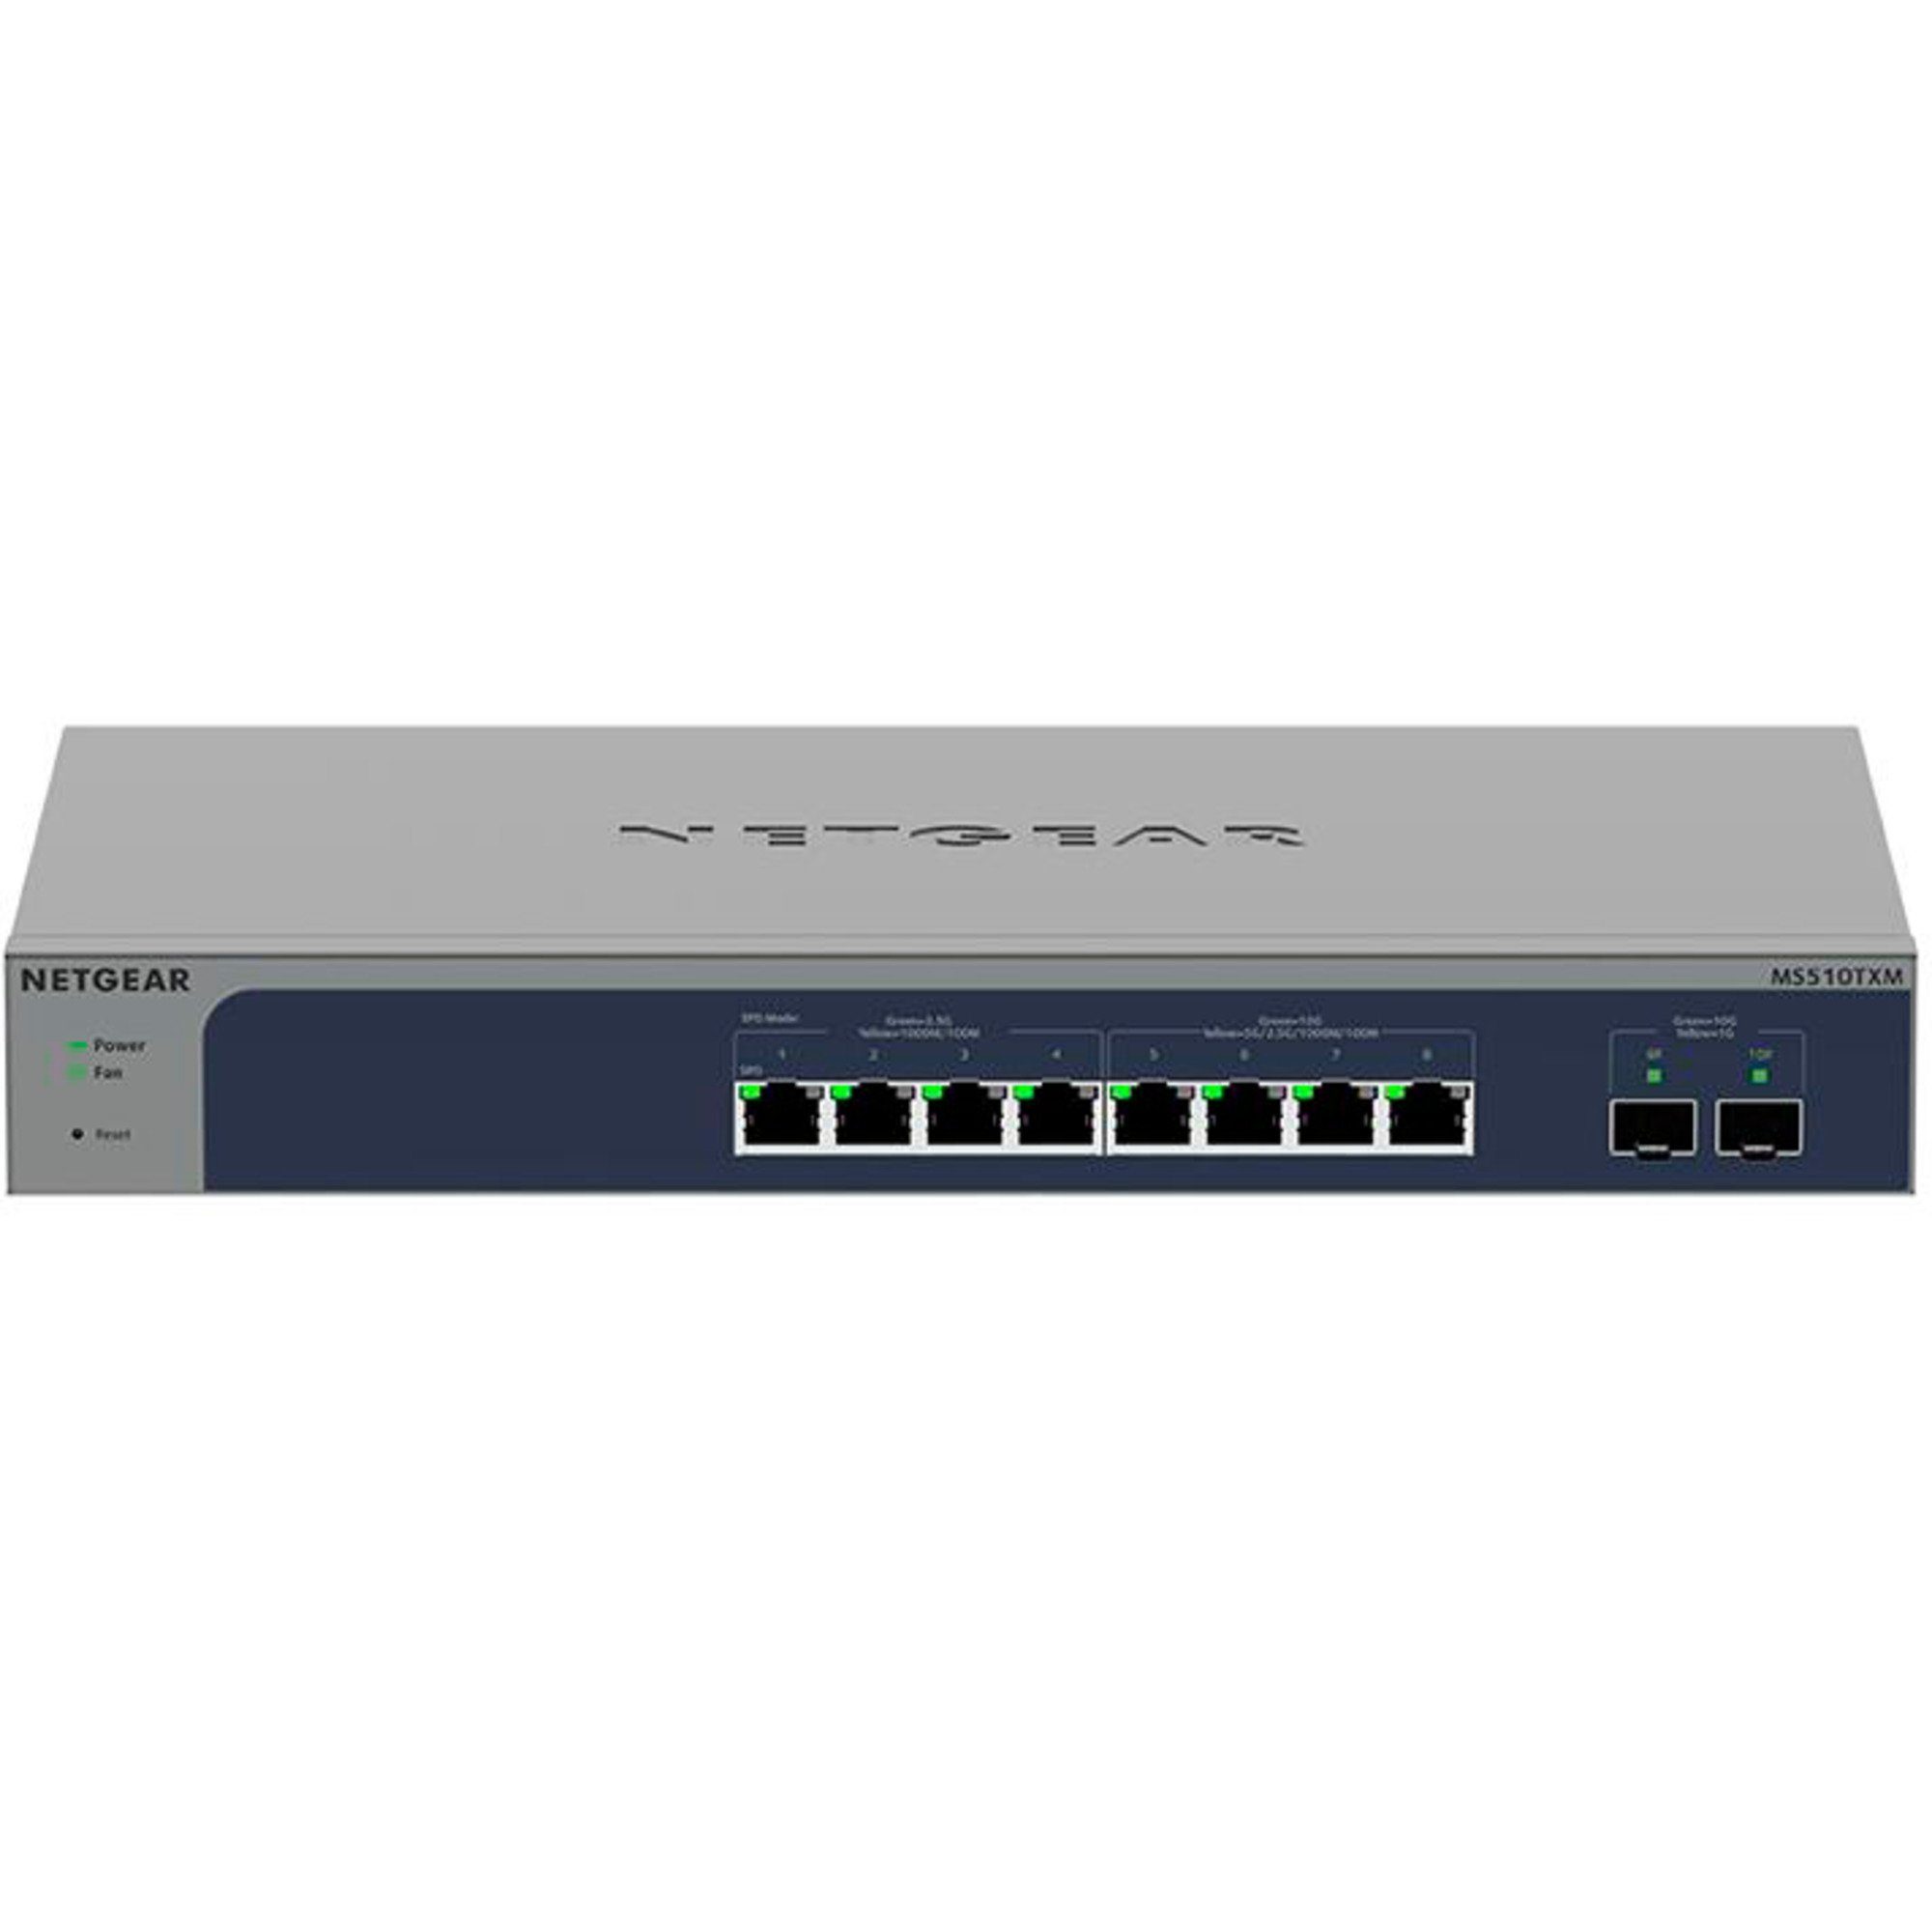 NETGEAR Netgear Switch MS510TXM, Netzwerk-Switch